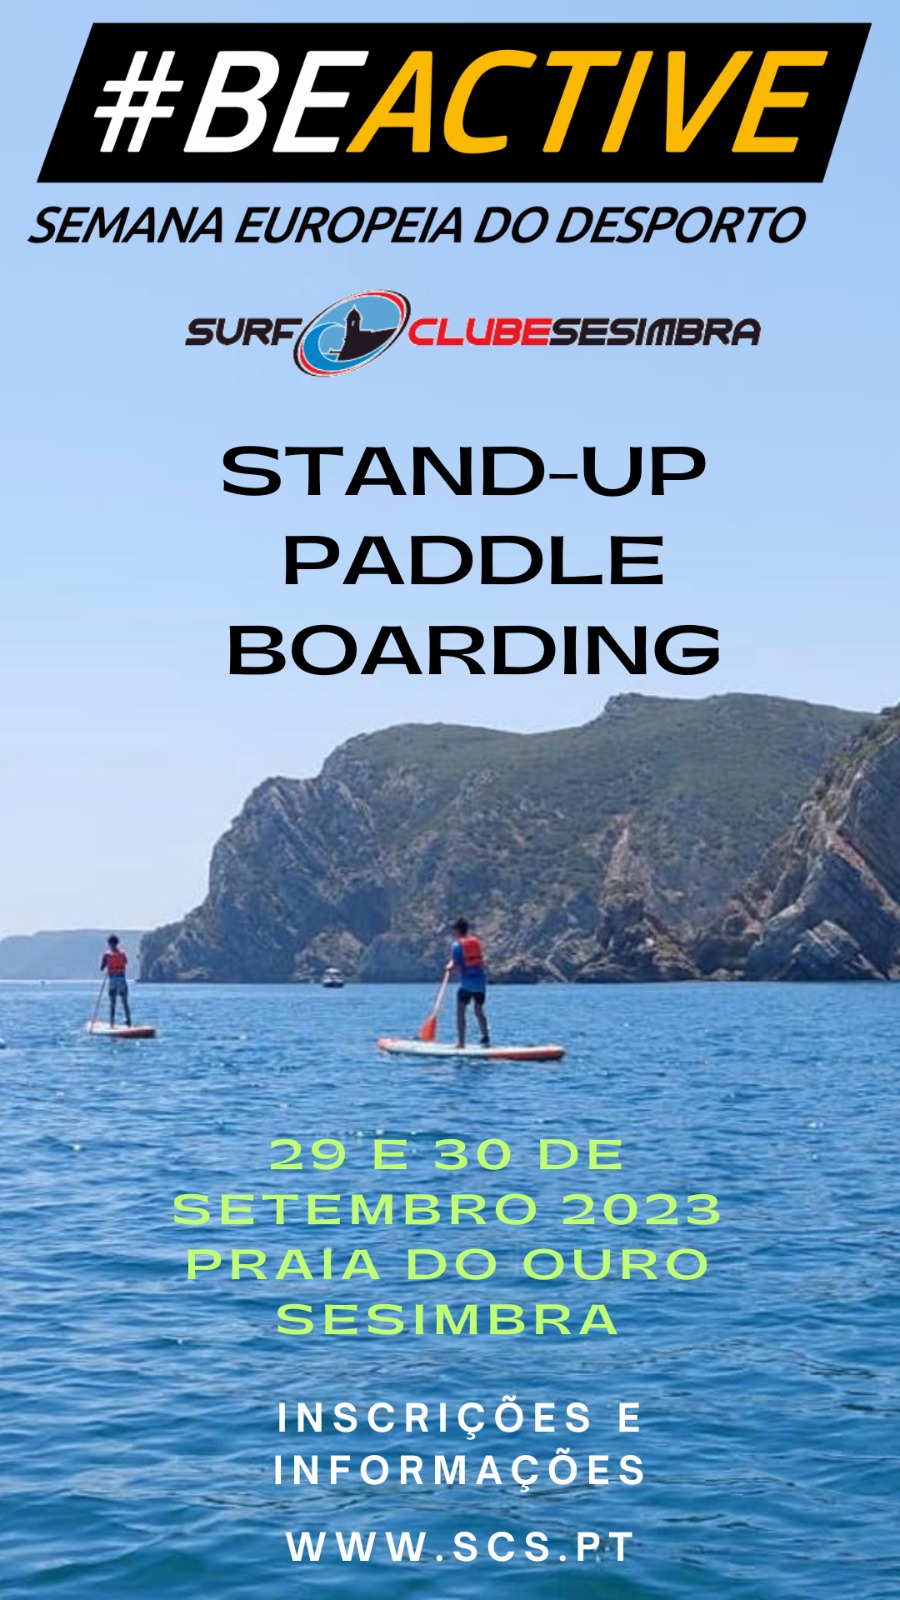 Semana Europeia do Desporto - Iniciação ao Stand-Up Paddle Boarding